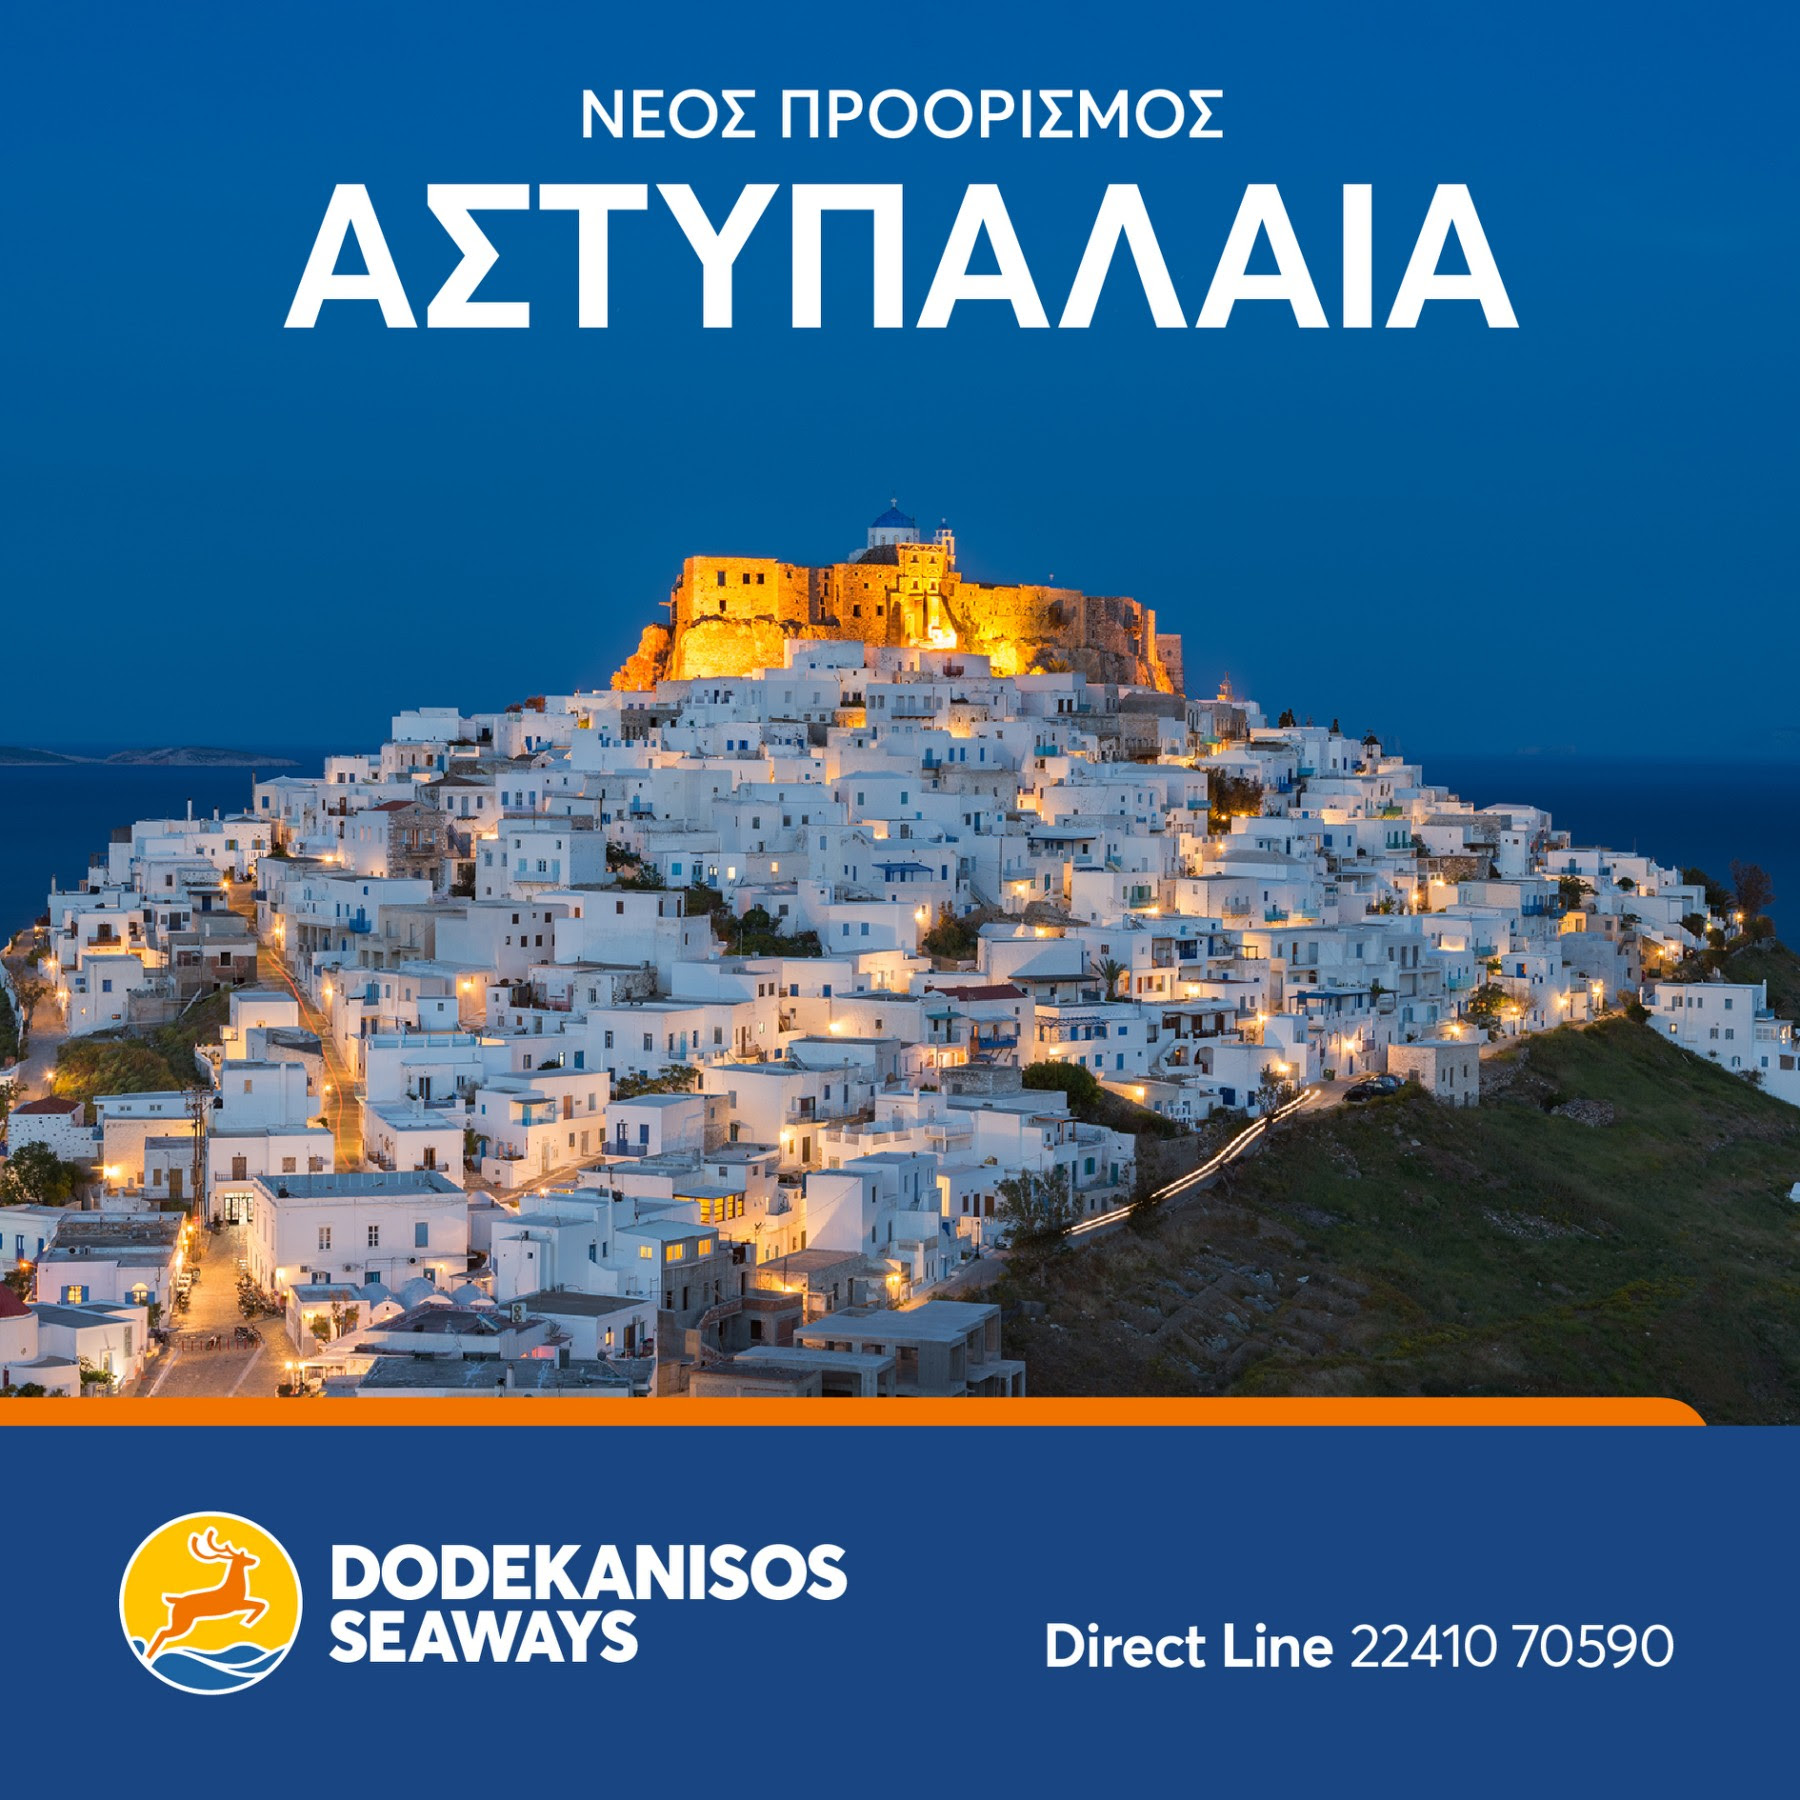 Νέος προορισμός της Dodekanisos Seaways η Αστυπάλαια, Αρχιπέλαγος, Η 1η ναυτιλιακή πύλη ενημέρωσης στην Ελλάδα